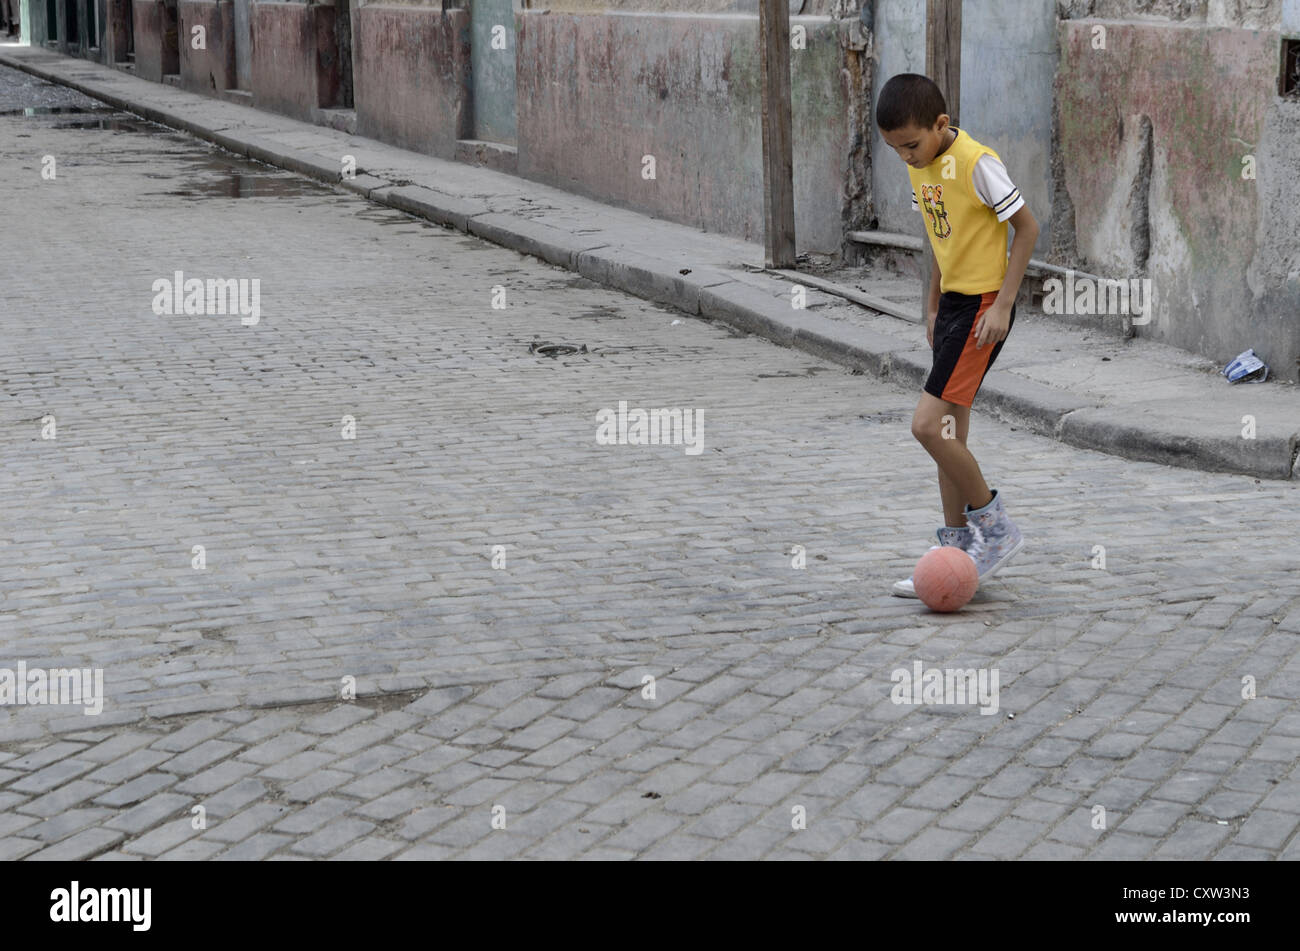 Boy in back street in Havana, Cuba Stock Photo